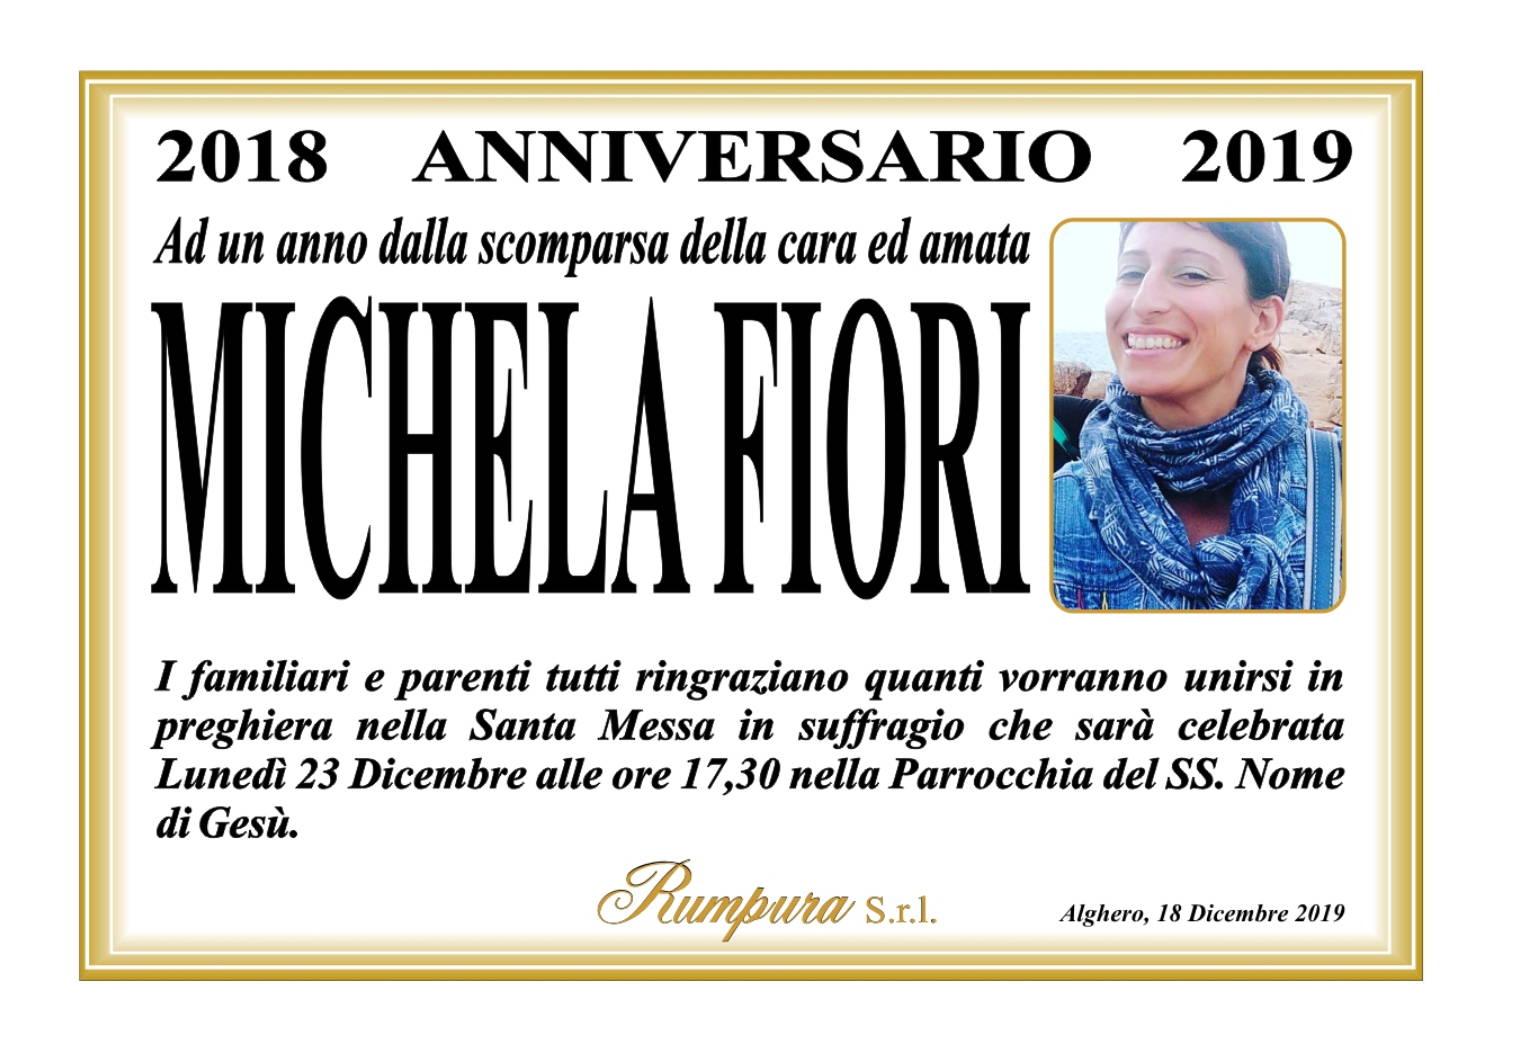 Michela Fiori